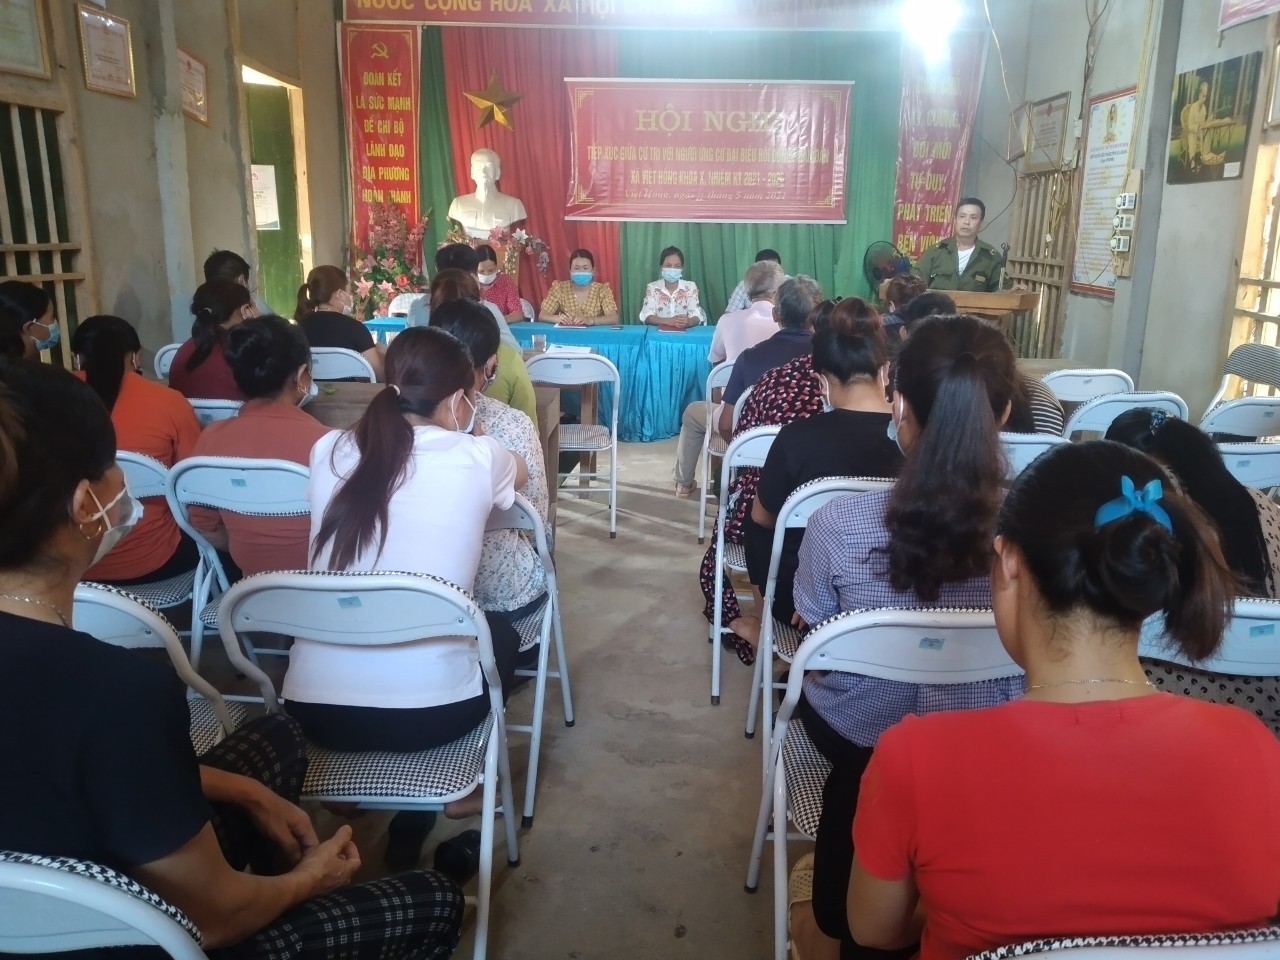 Hội nghị tiếp xúc giữa người ứng cử đại biểu HĐND xã, khóa X, nhiệm kỳ 2021-2026 với cử tri trên địa bàn xã Việt Hồng